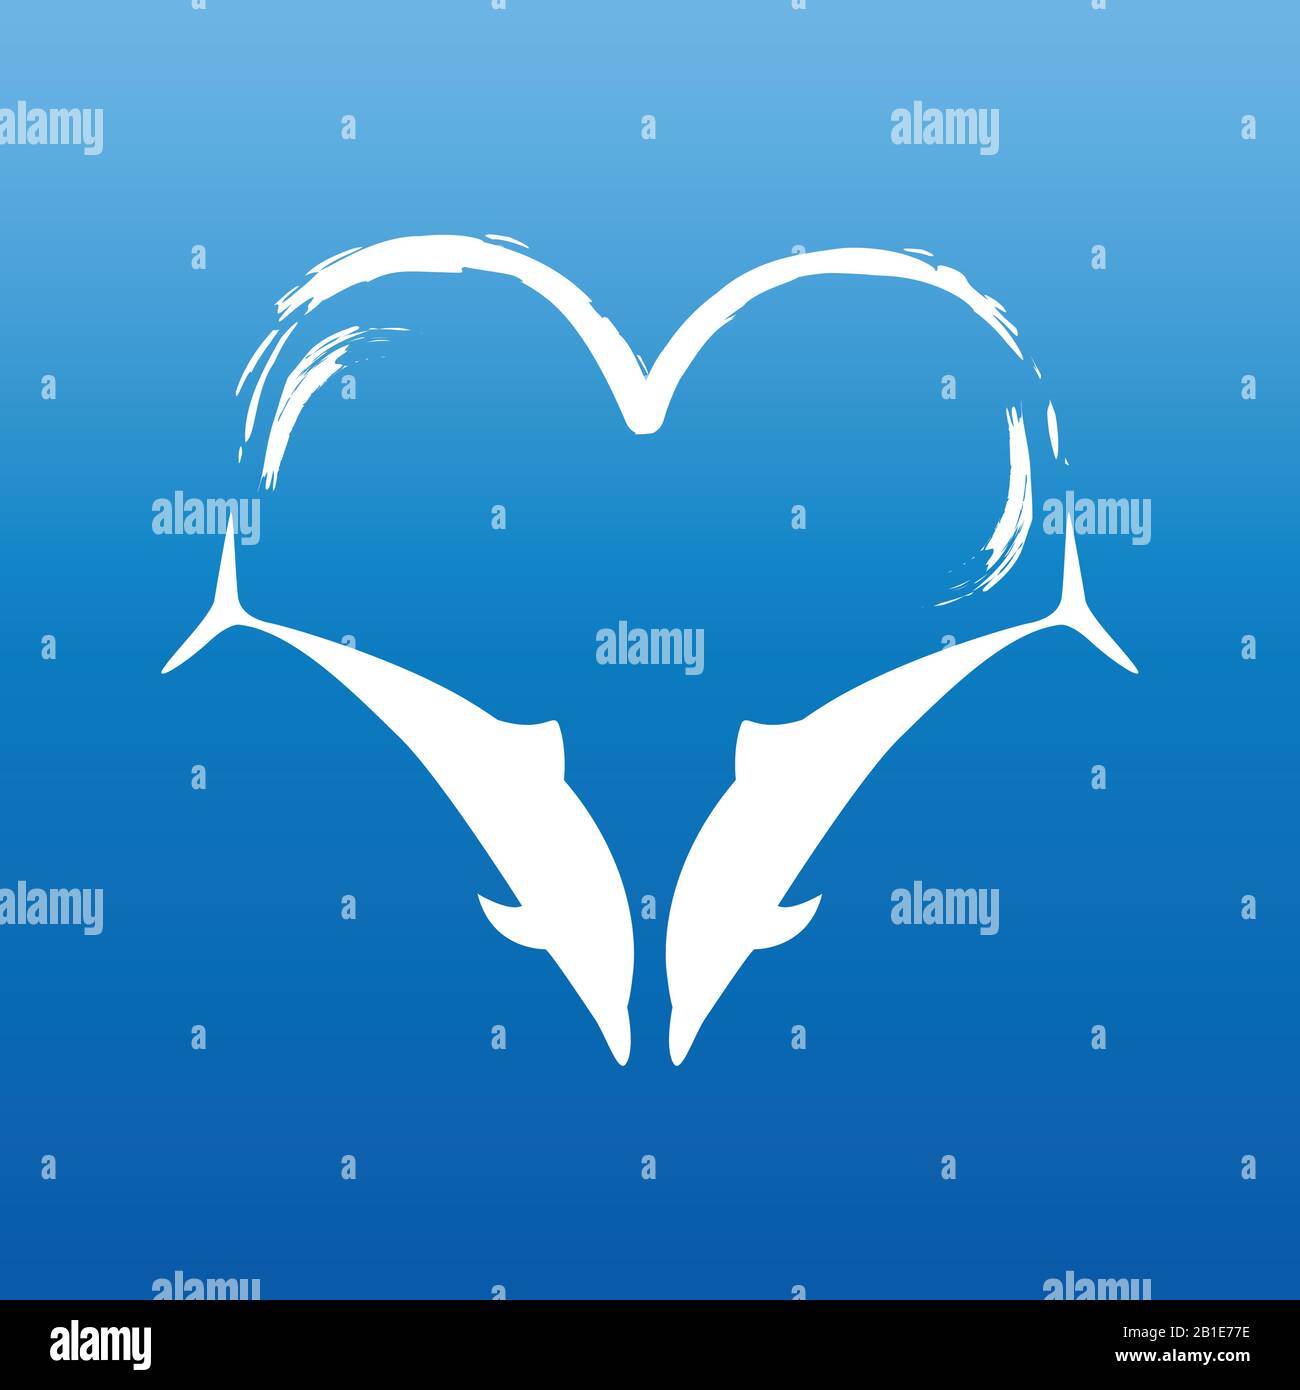 Deux dauphins en forme de coeur sur fond bleu illustration vectorielle EPS10 Illustration de Vecteur